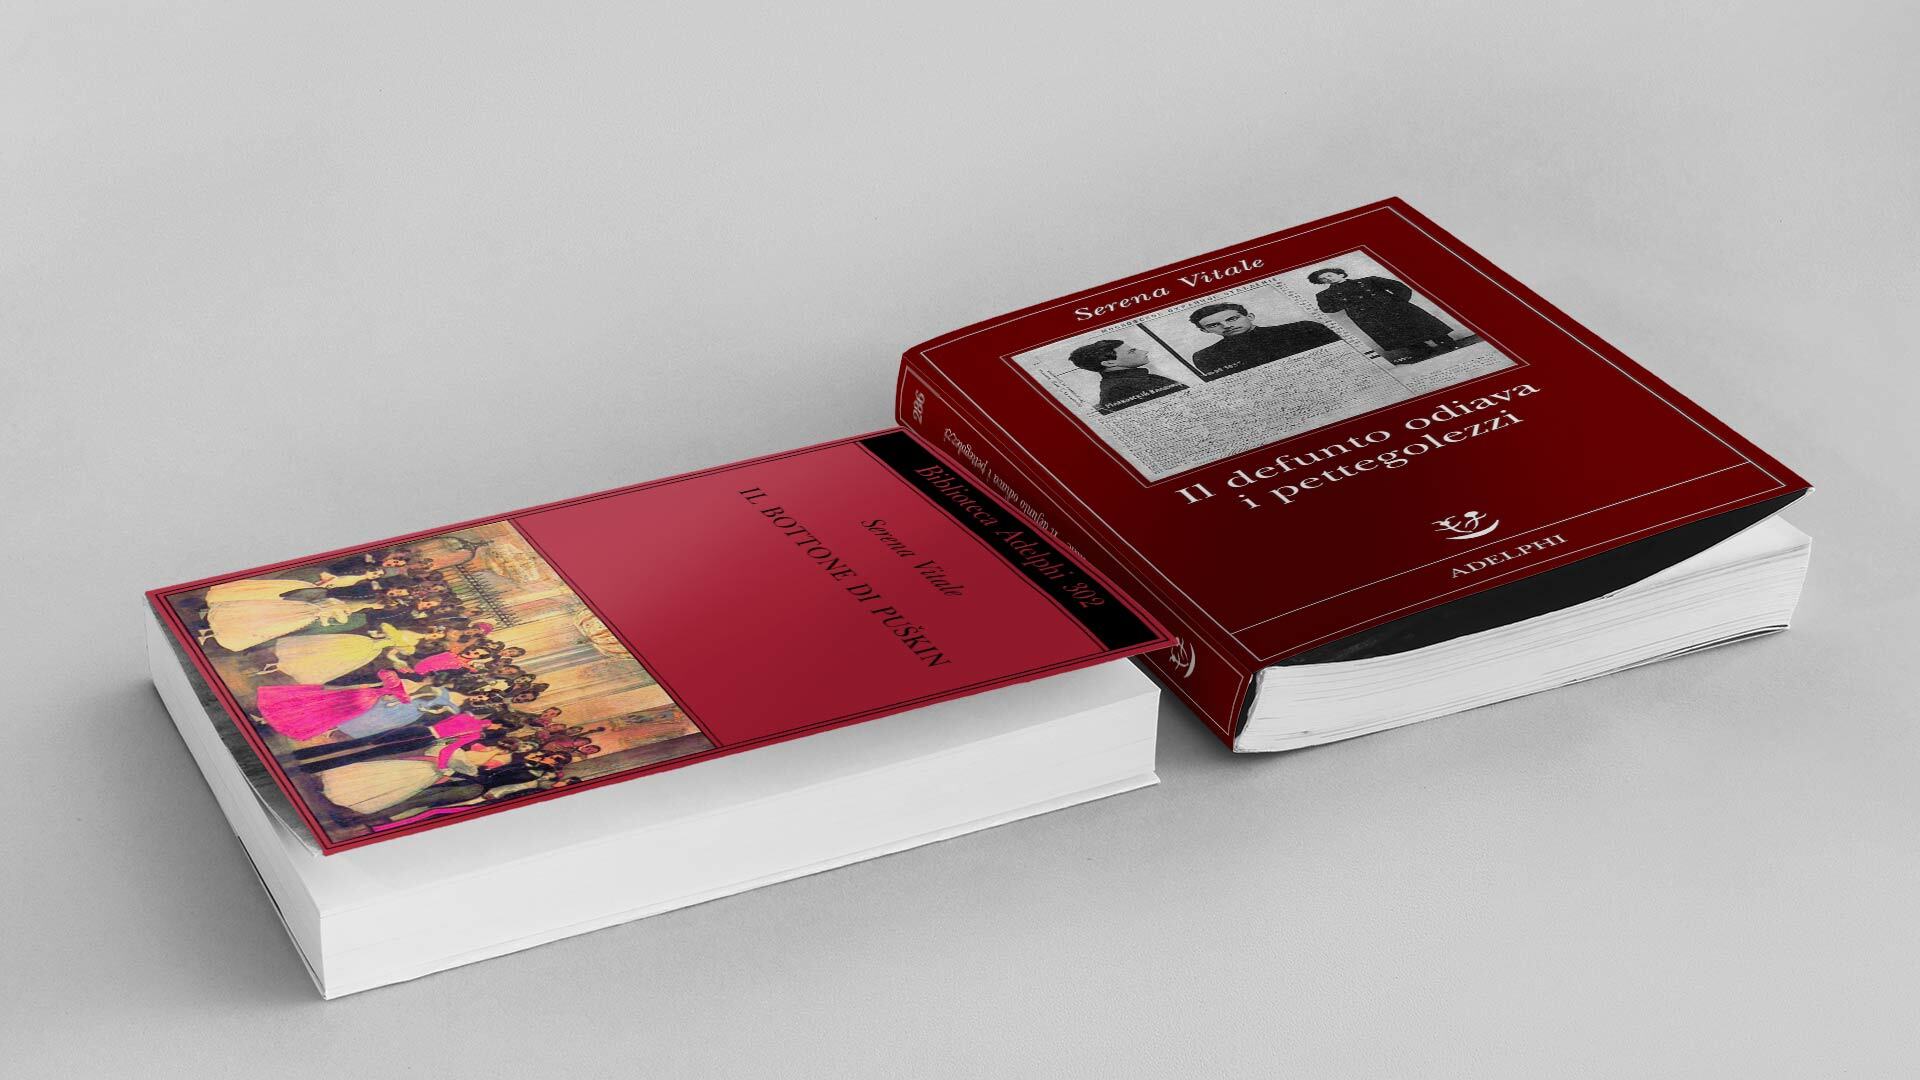 Due delle sette opere di narrativa di Serena Vitale; con Mondadori ha pubblicato anche La casa di ghiaccio. Venti piccole storie russe (2000), L’imbroglio del turbante (2006) e A Mosca, a Mosca! (2010)